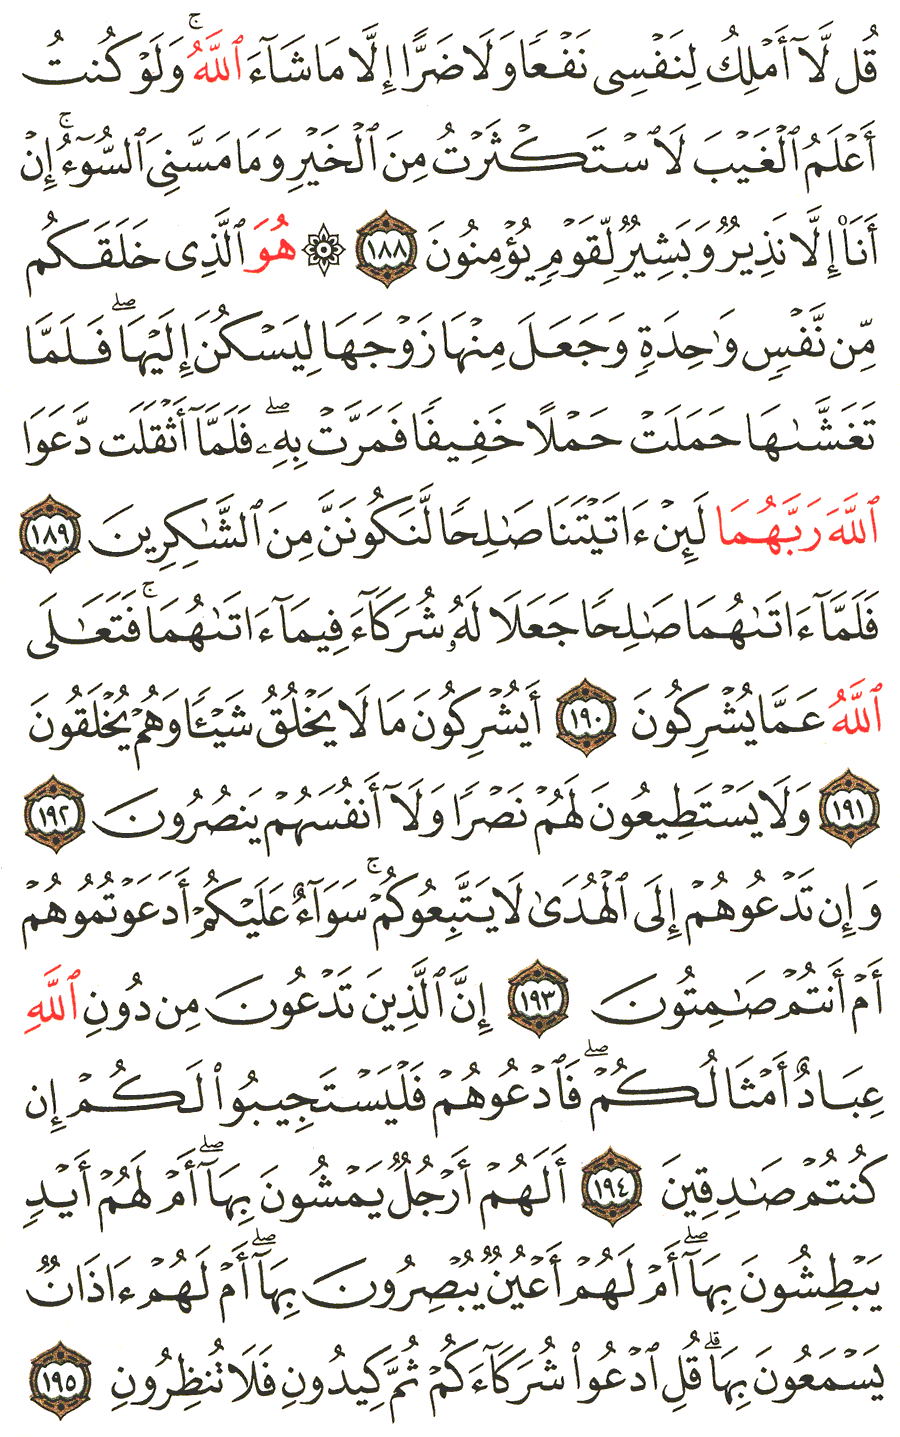 الصفحة 175 من القرآن الكريم